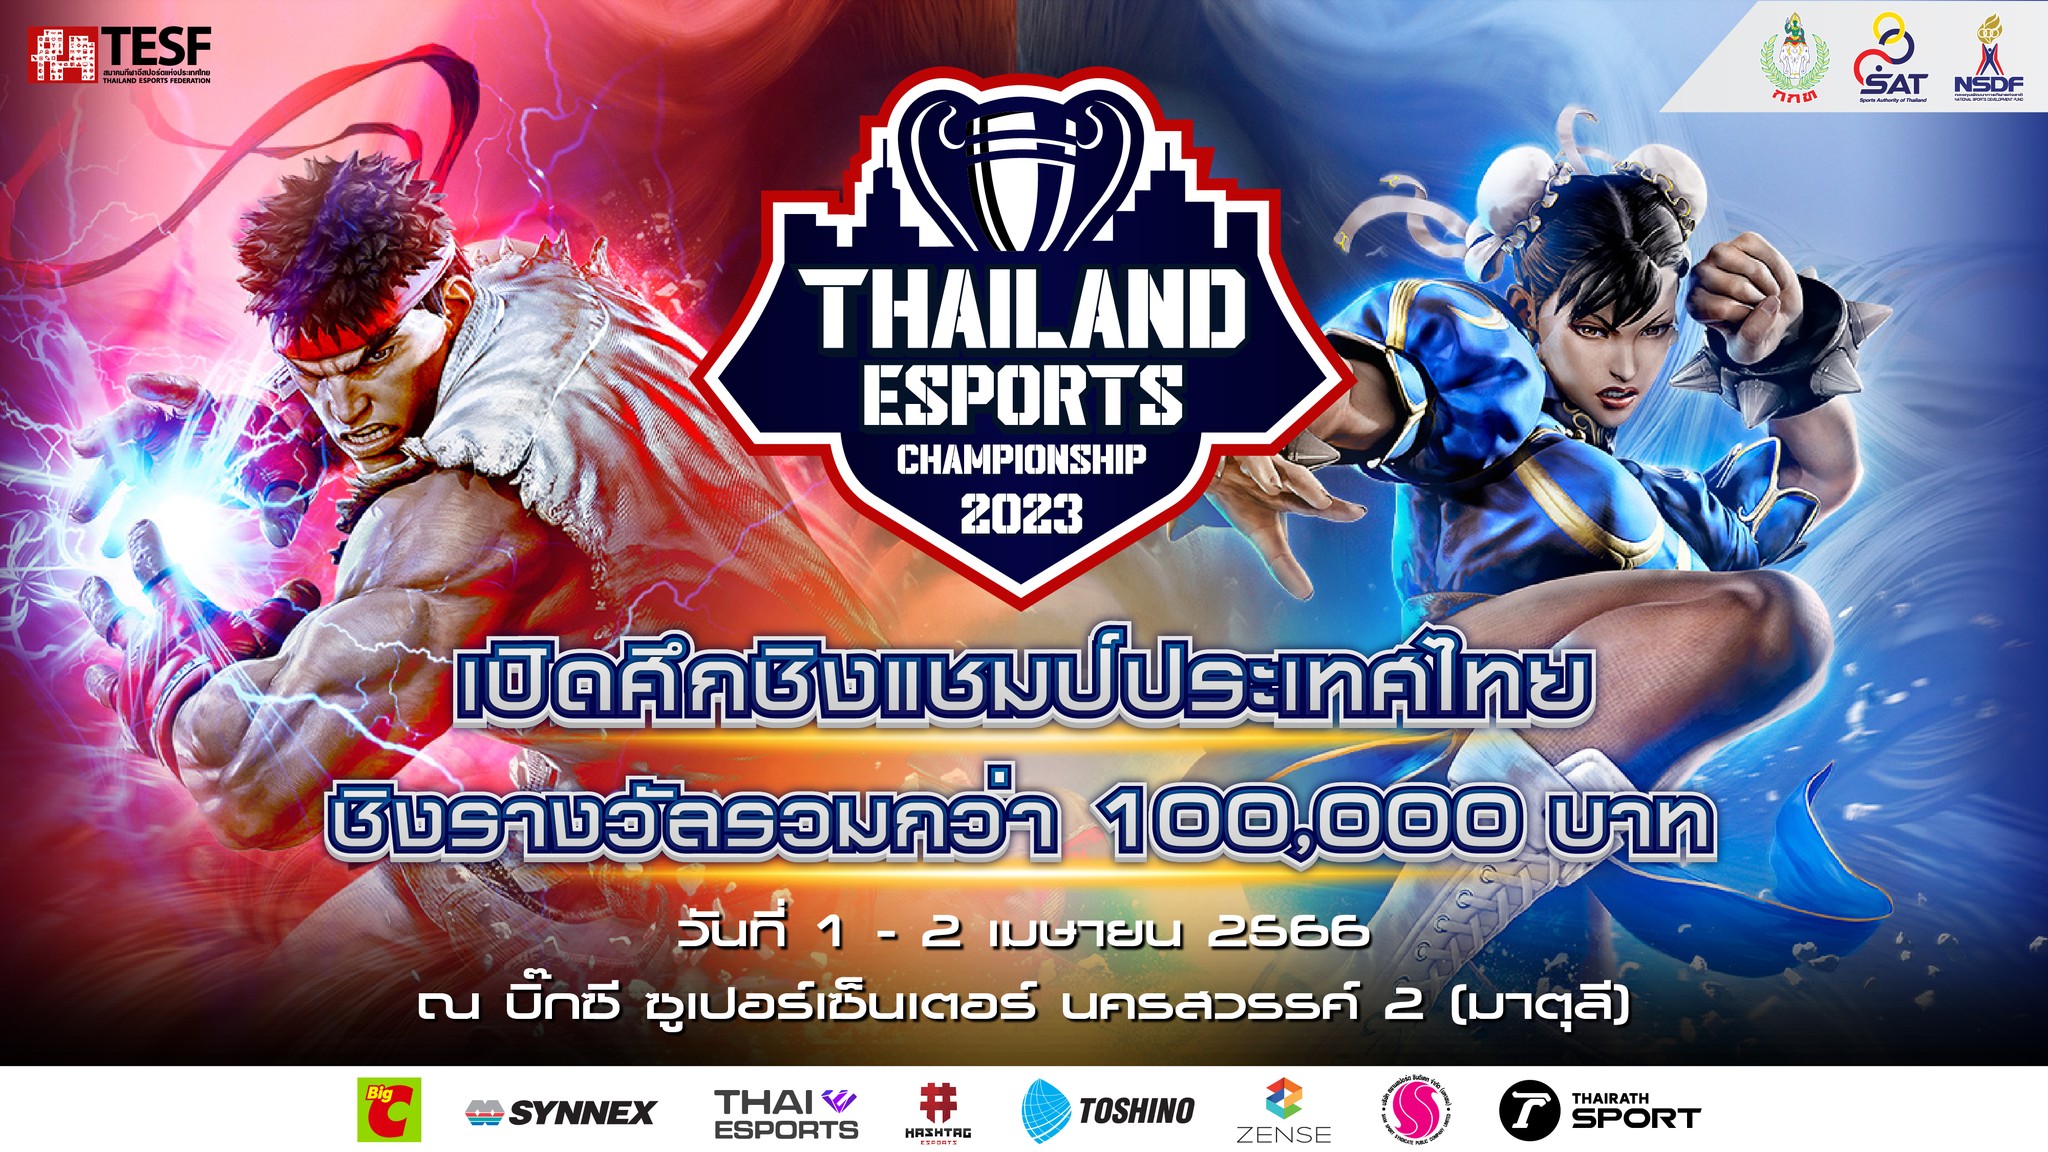 ปิดรับสมัครแข่งขันรายการชิงแชมป์ประเทศไทย STREET FIGHTER V รายการ Thailand Esports Championship 2023